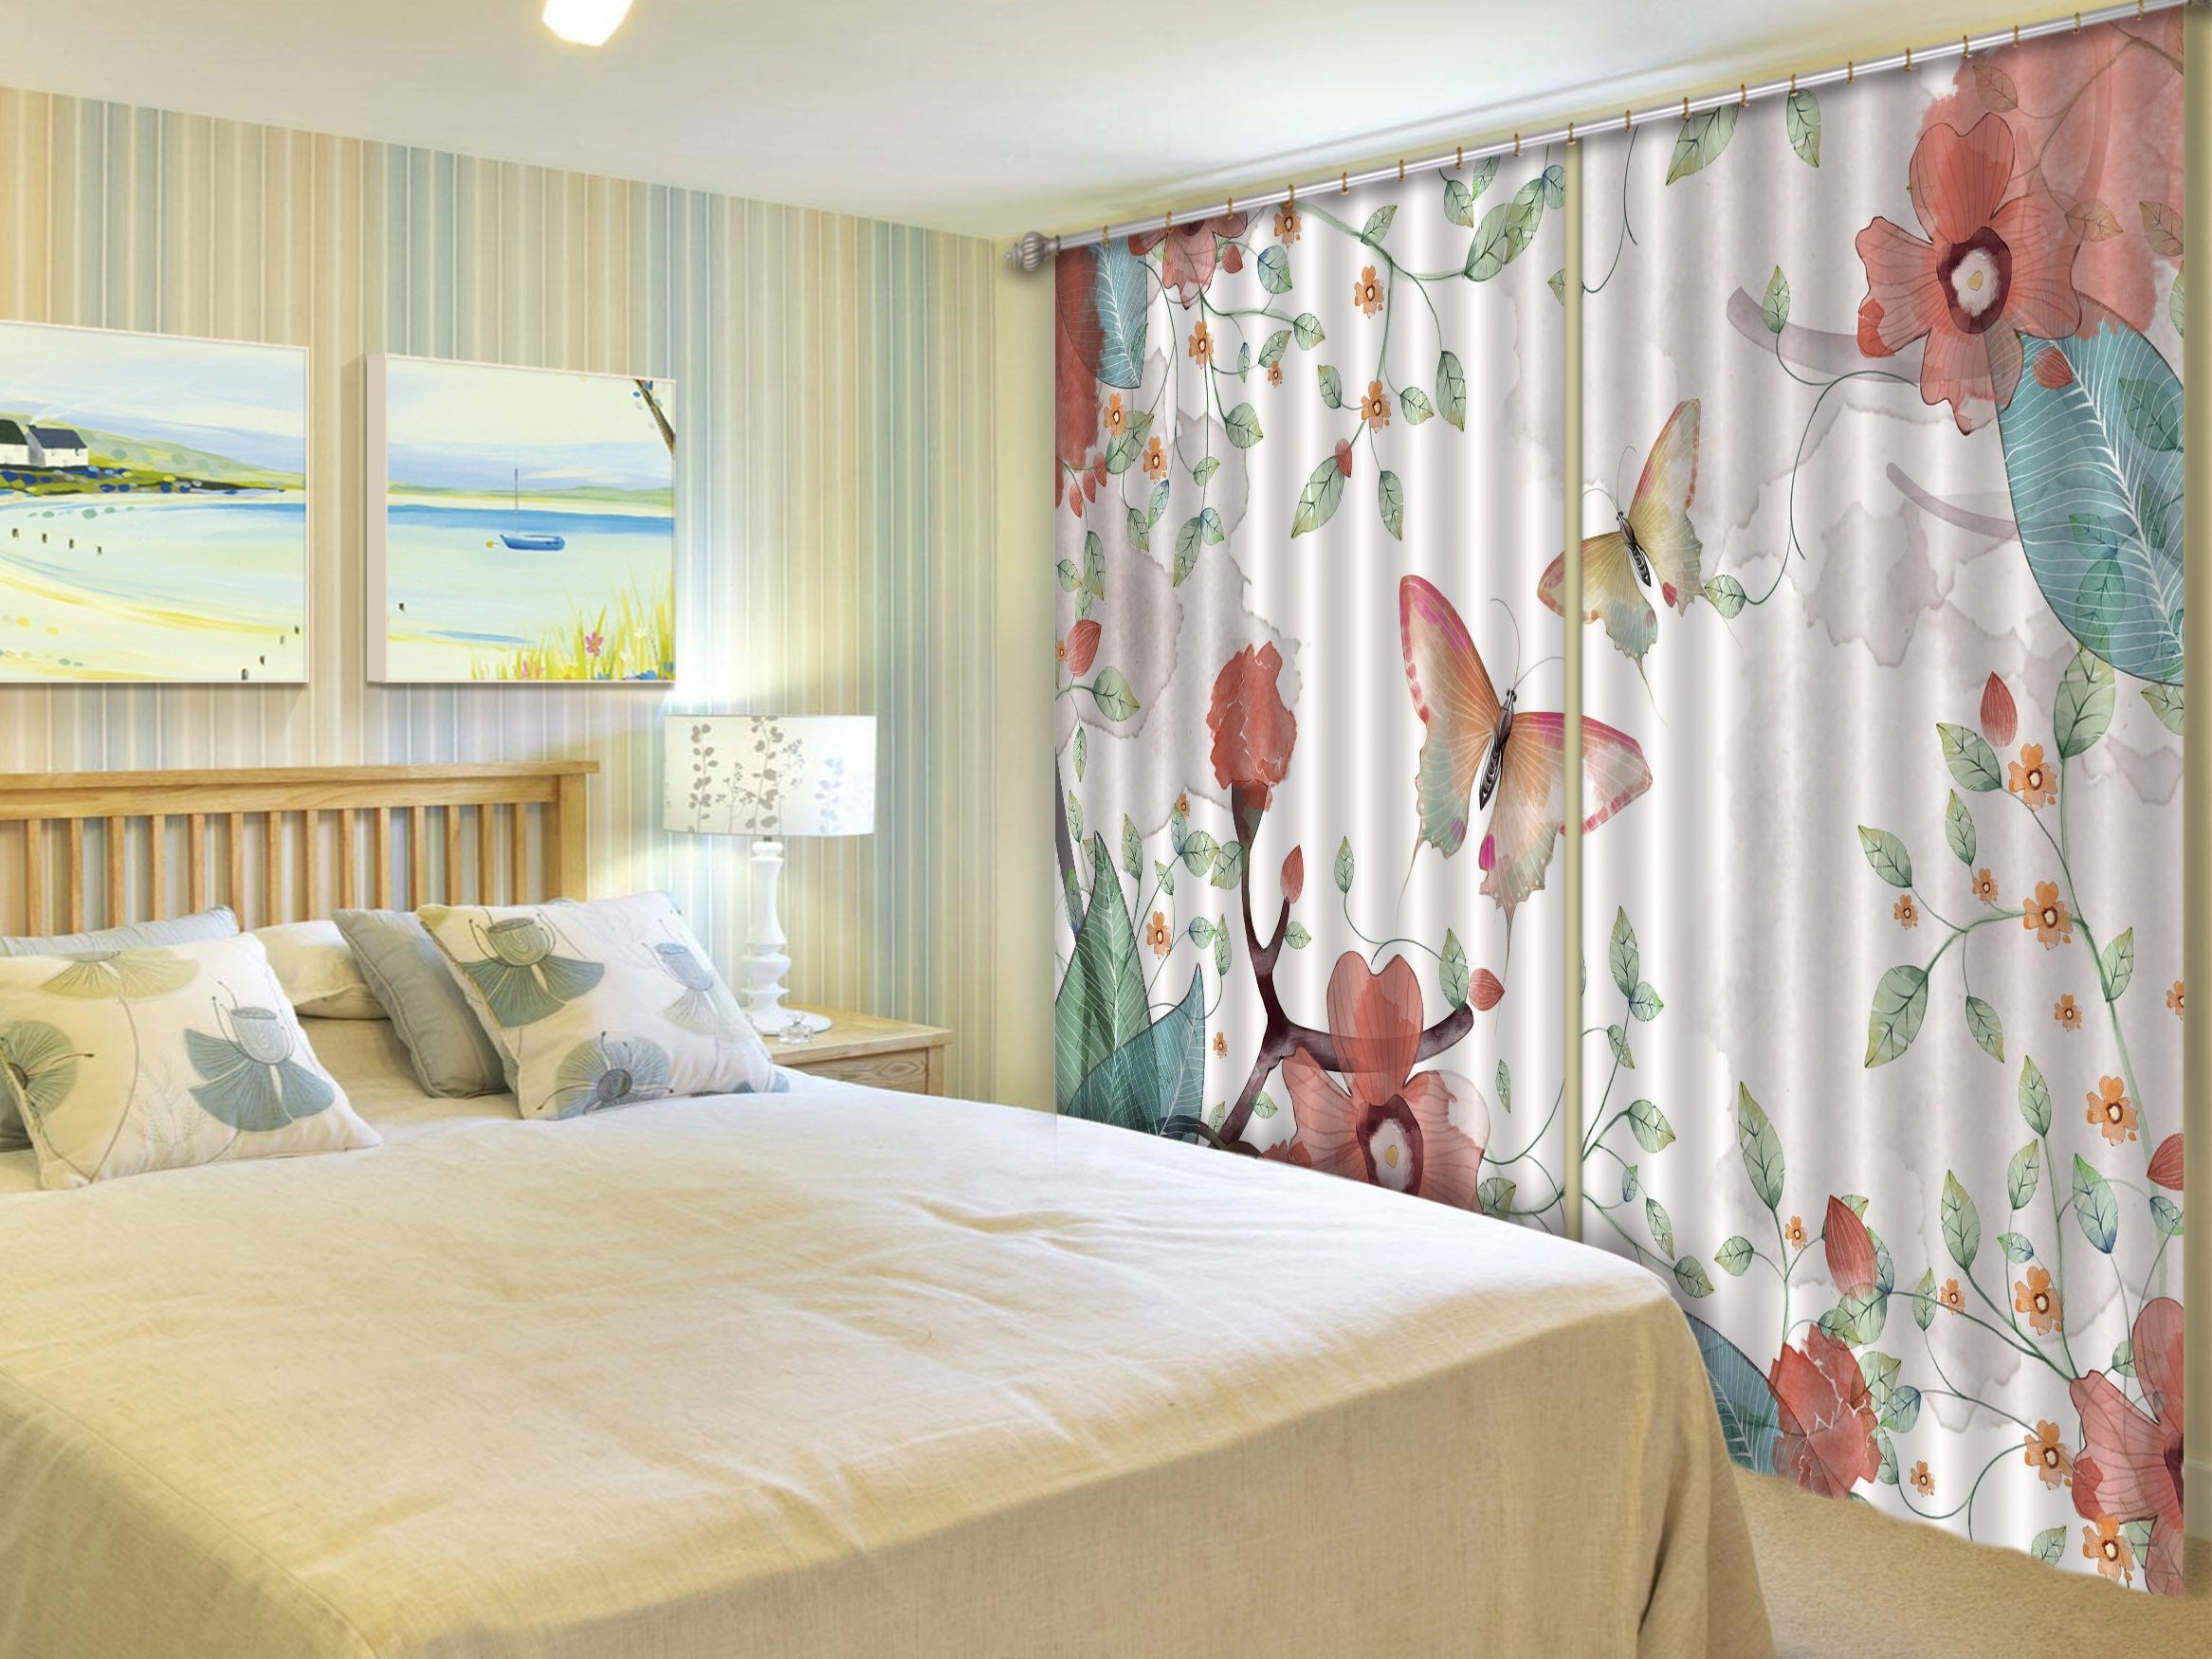 3D Flowers Butterflies 539 Curtains Drapes Wallpaper AJ Wallpaper 